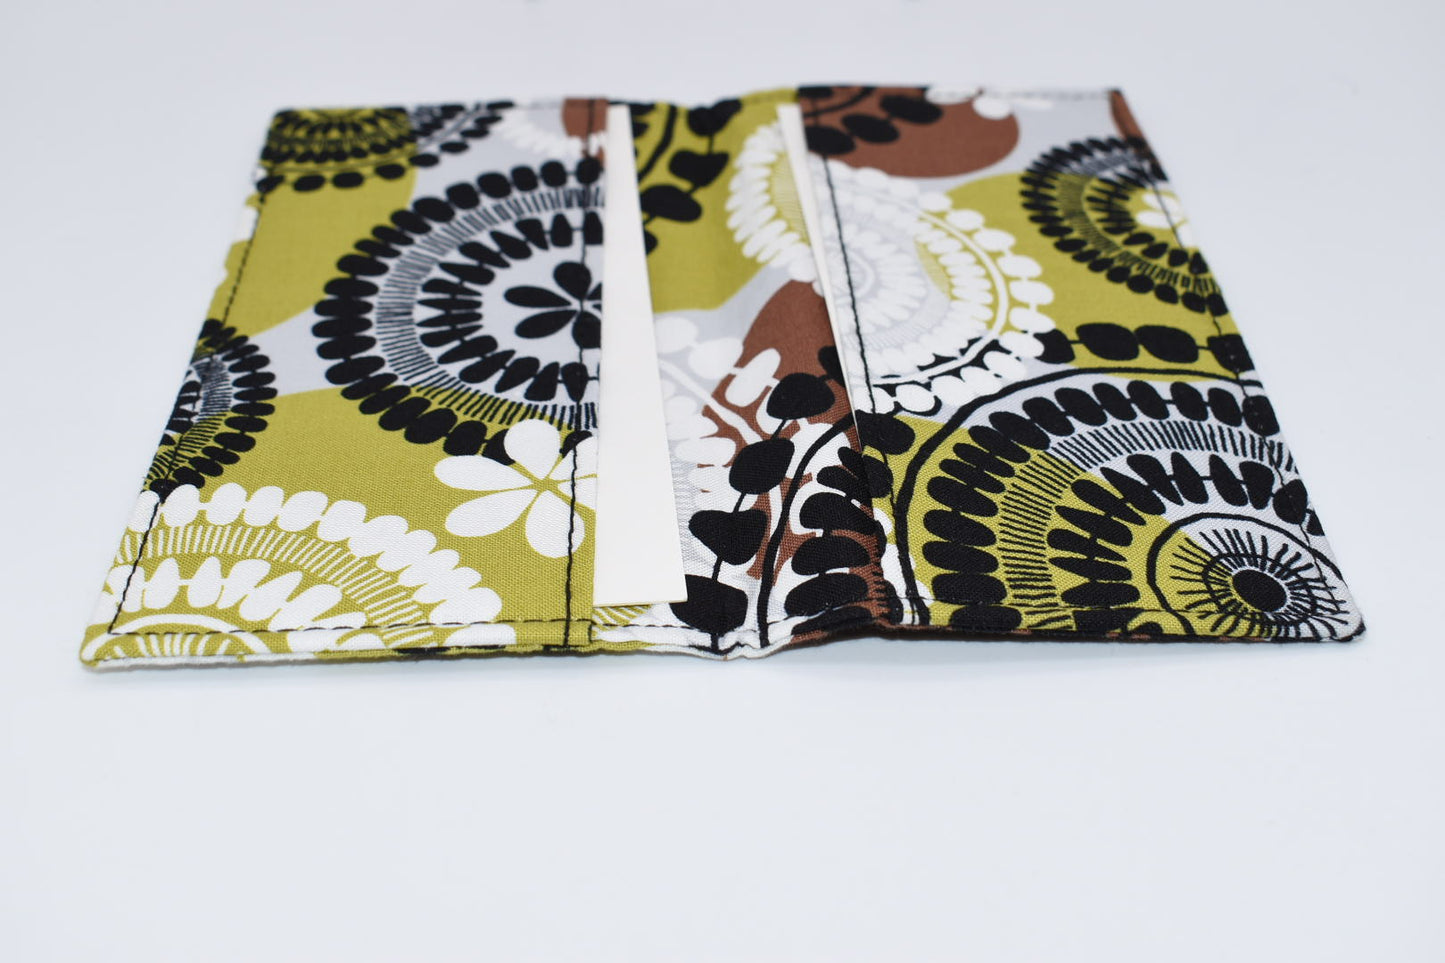 Vera Bradley Checkbook Cover in "Cocoa Moss" Pattern